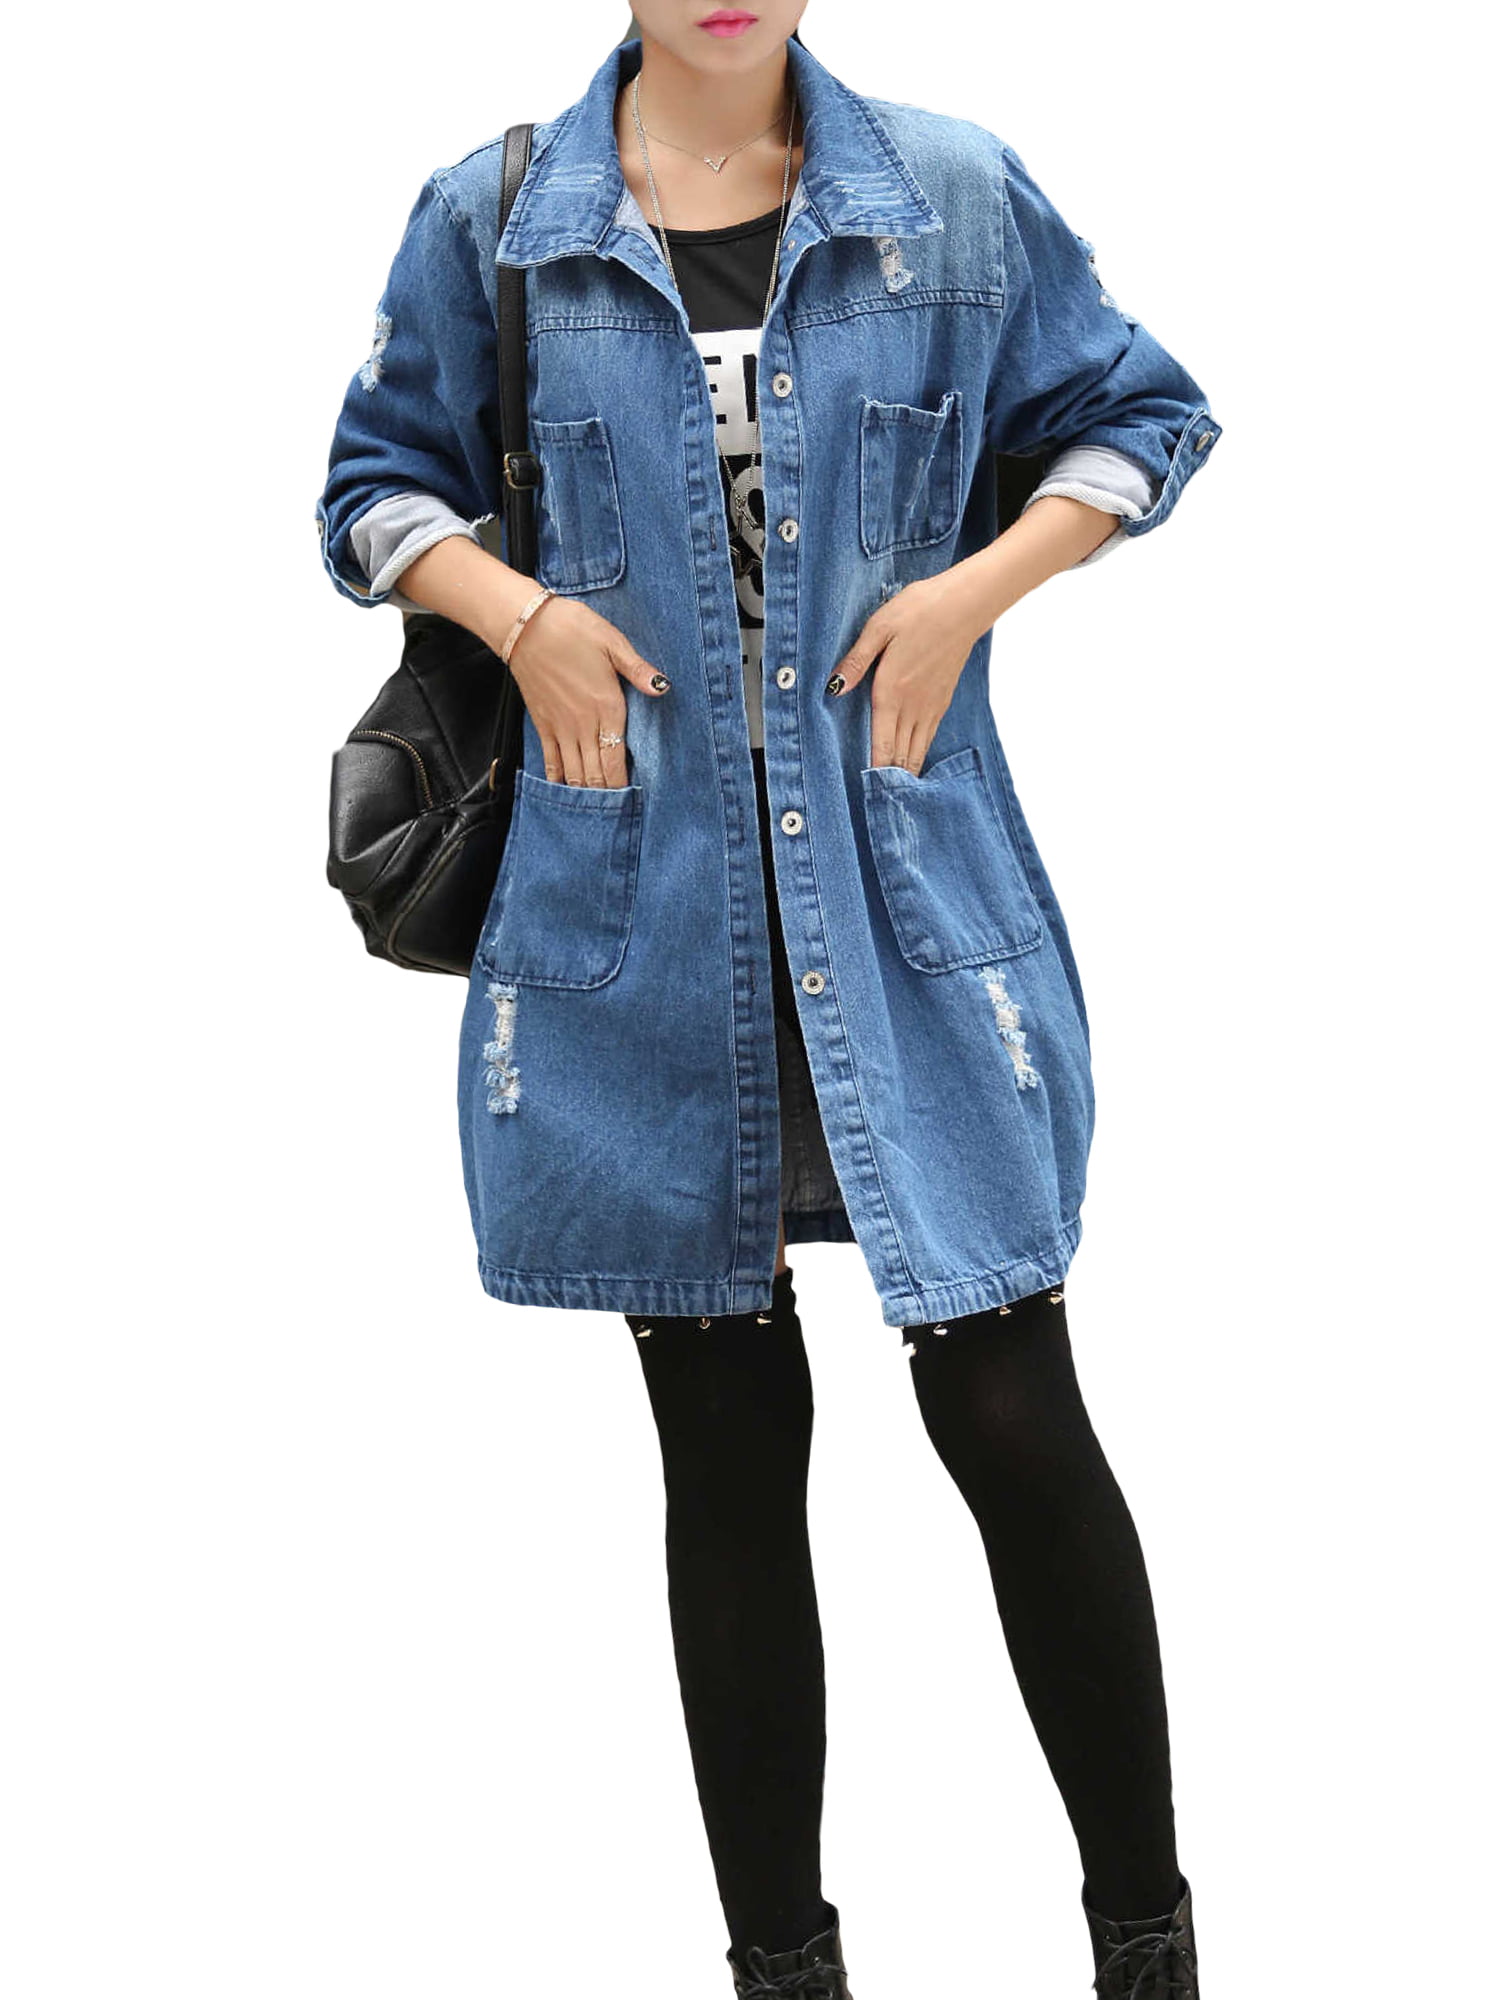 YUNY Women Outwear/Overcoat Short-Sleeve Button Denim Boyfriend Jacket Dark Blue XS